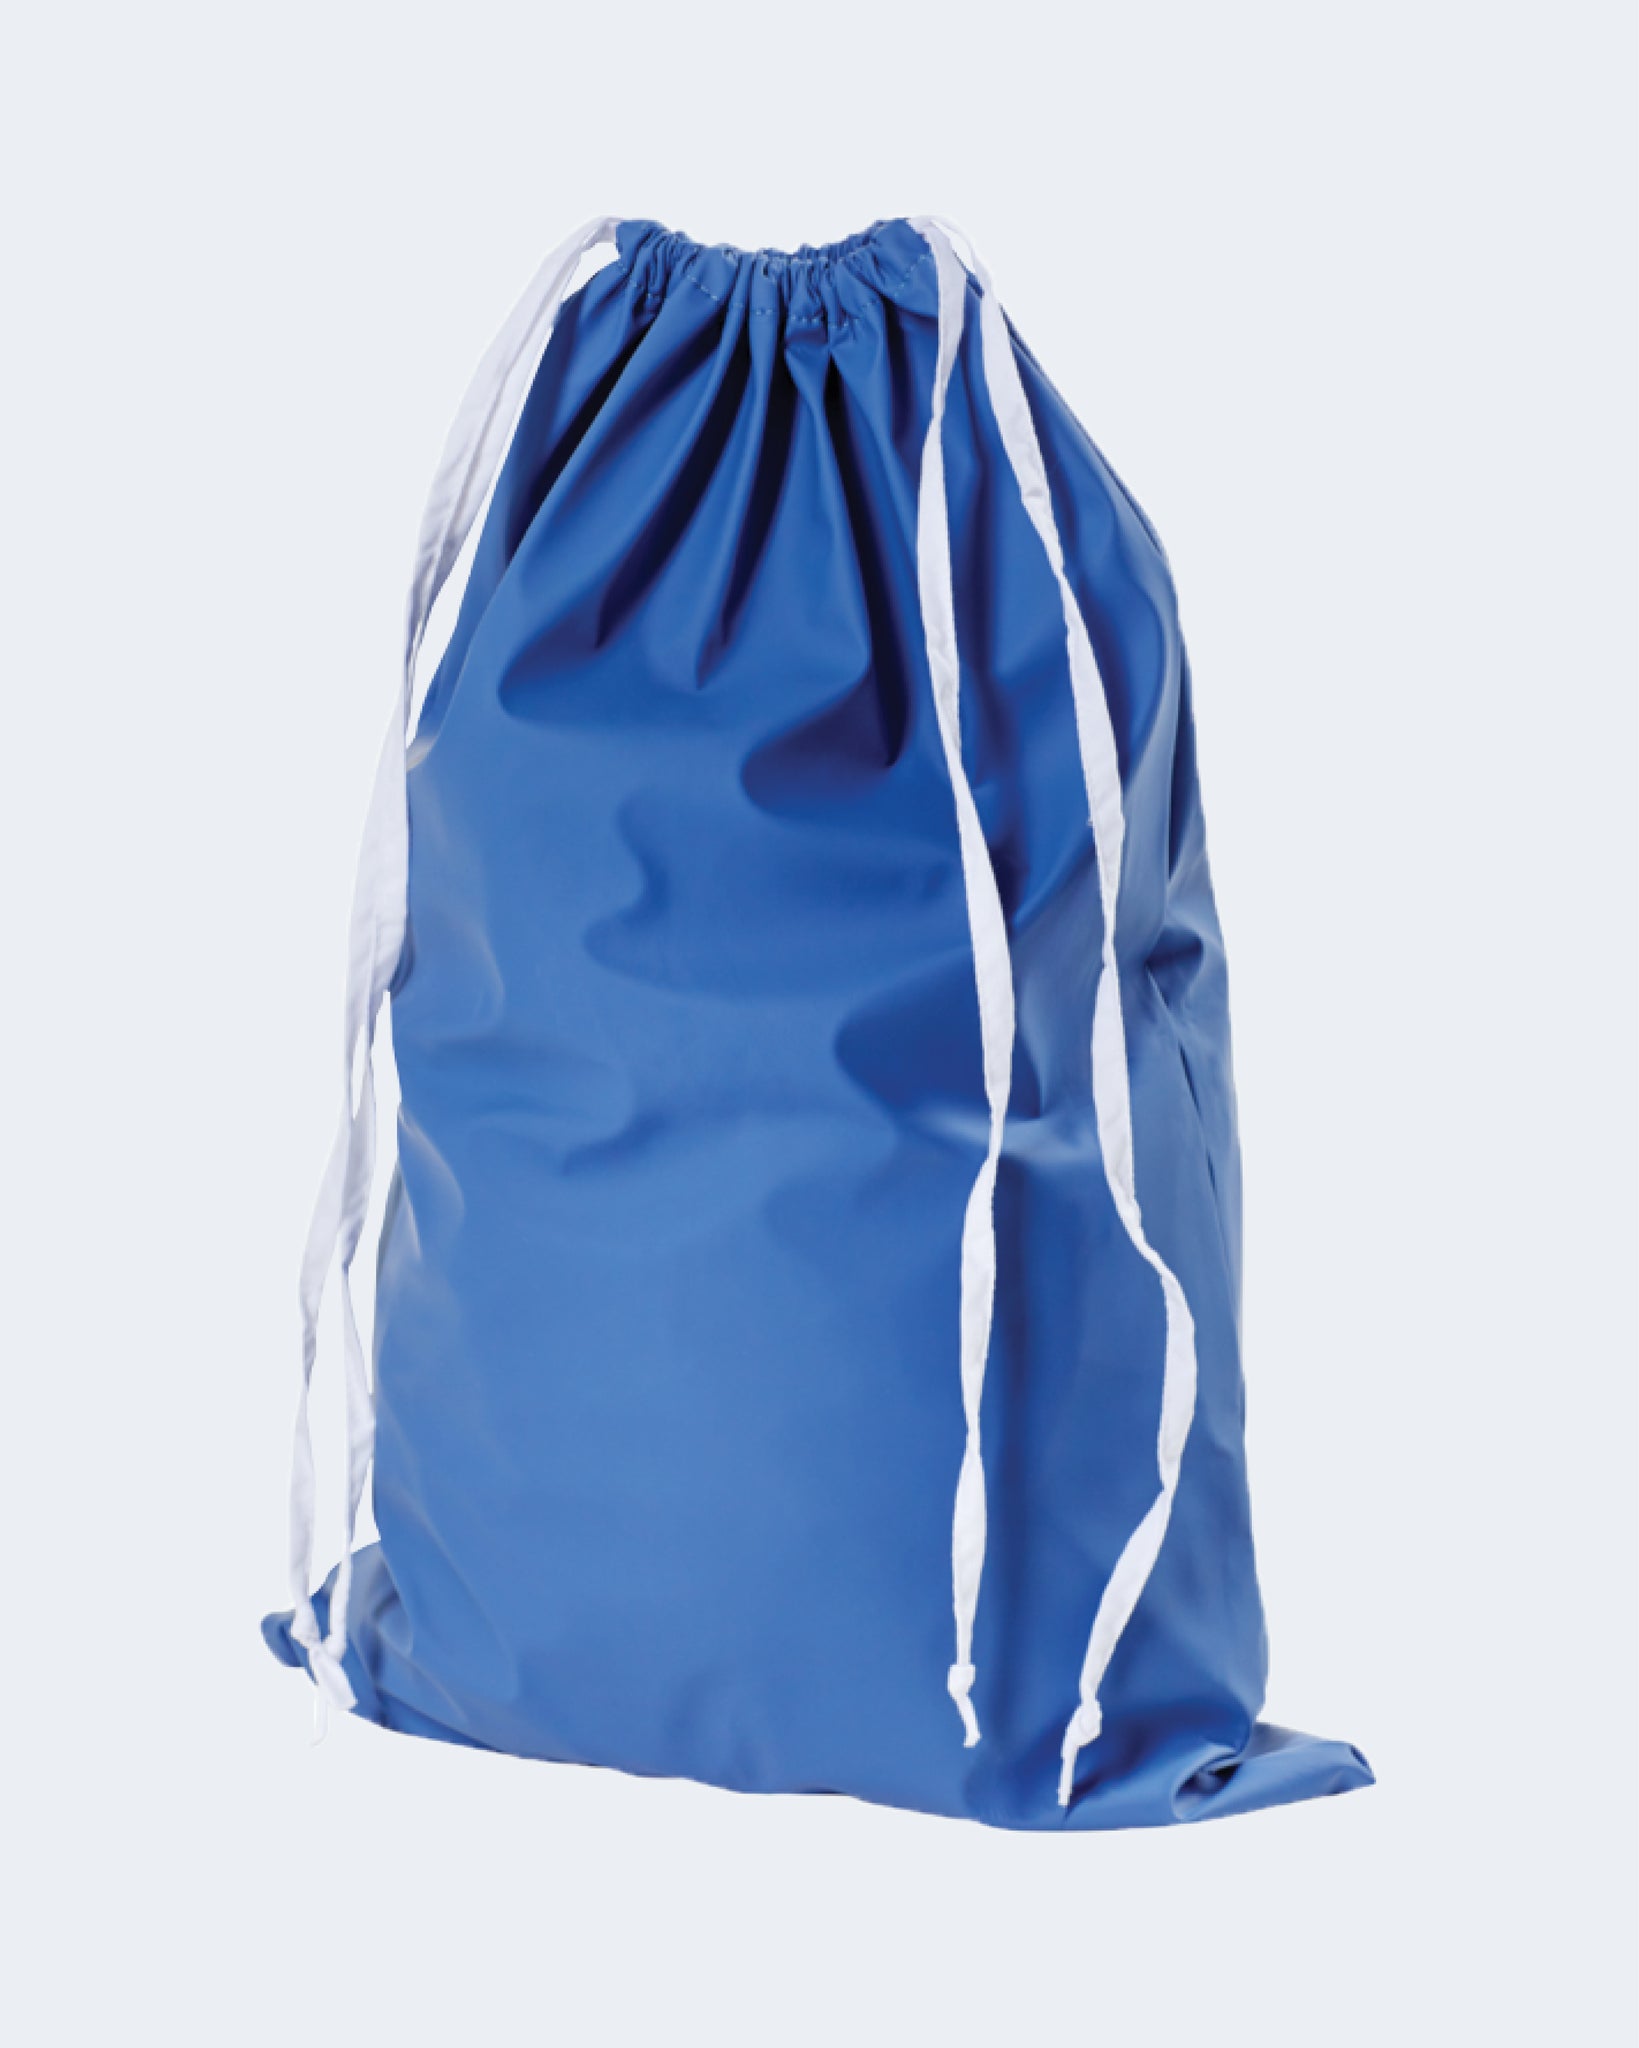 Waterproof Pjama Bag